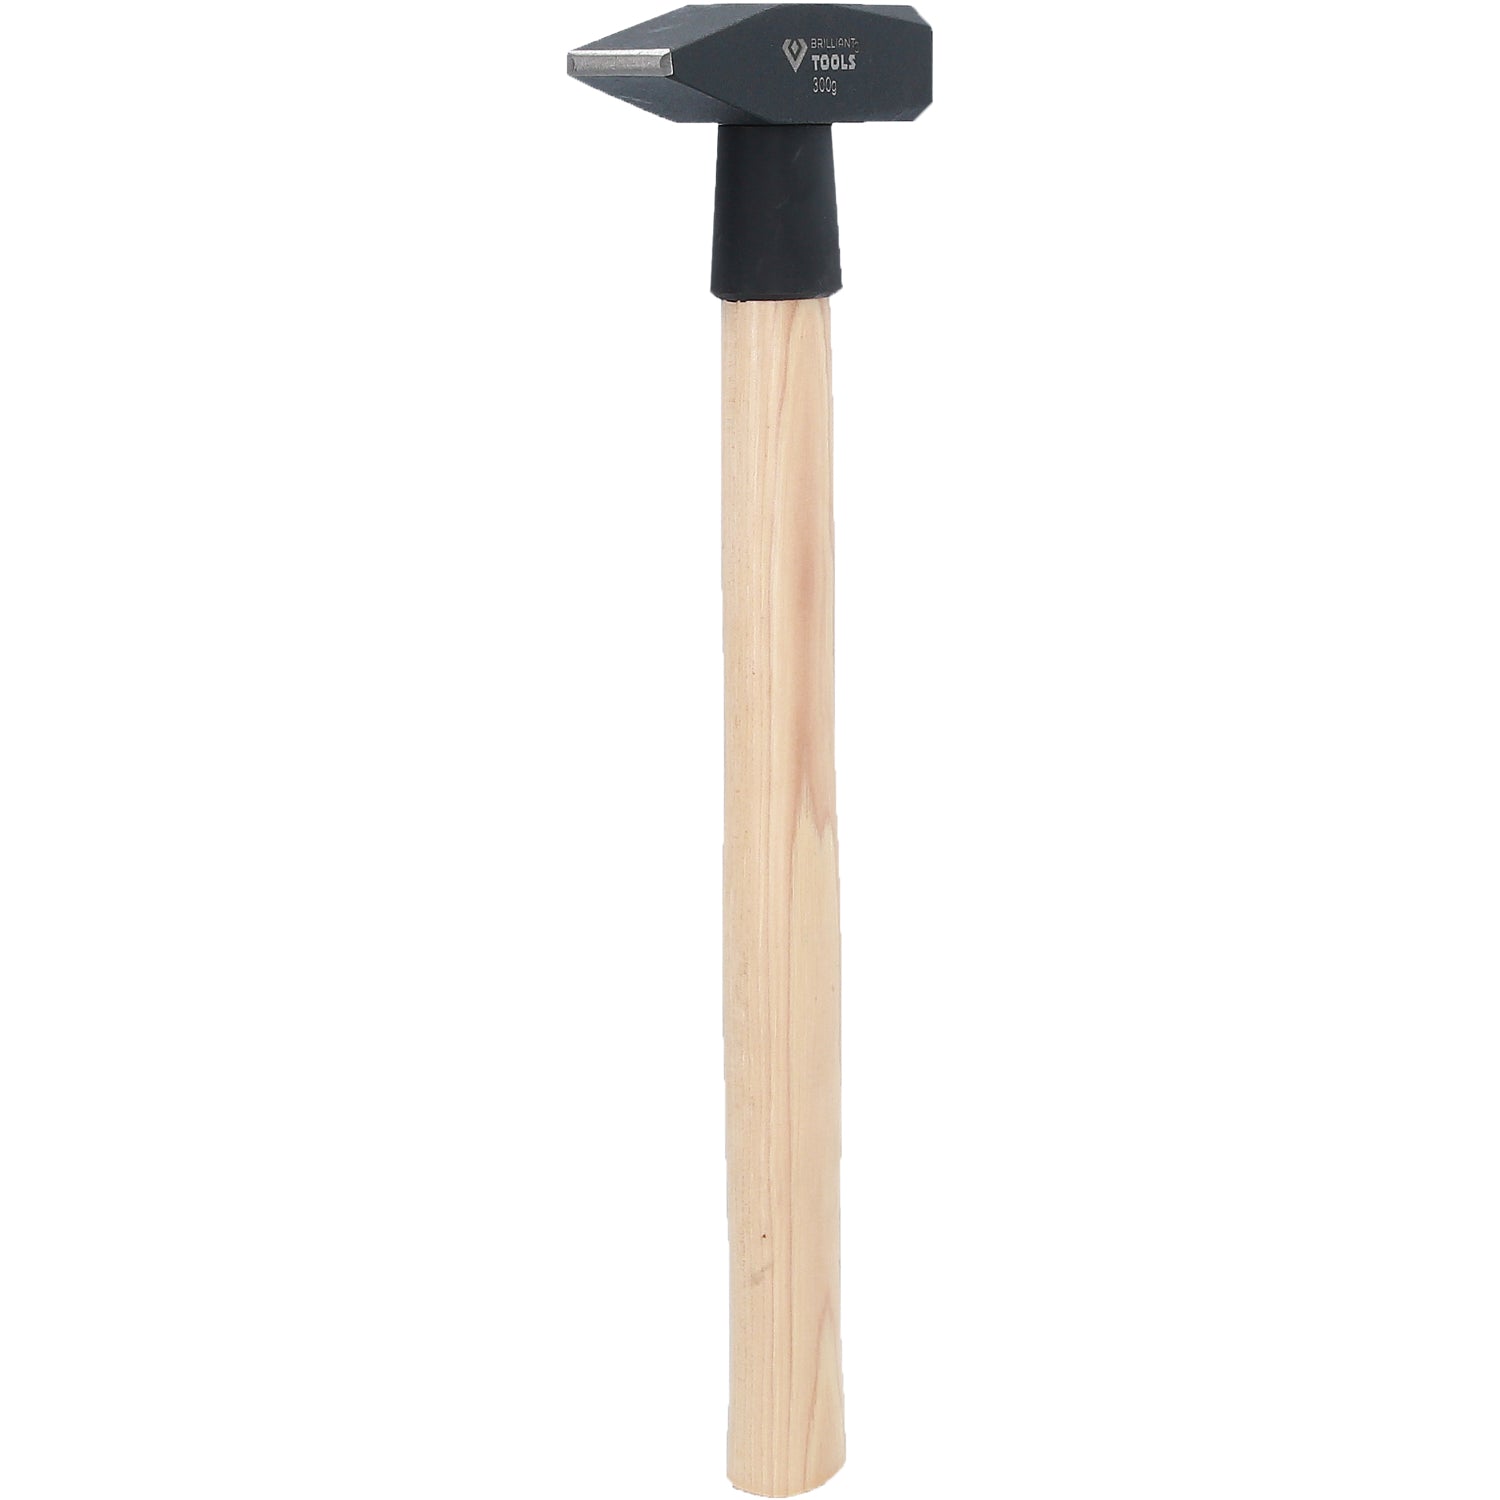 Schlosserhammer mit Hickory-Stiel, 300 g